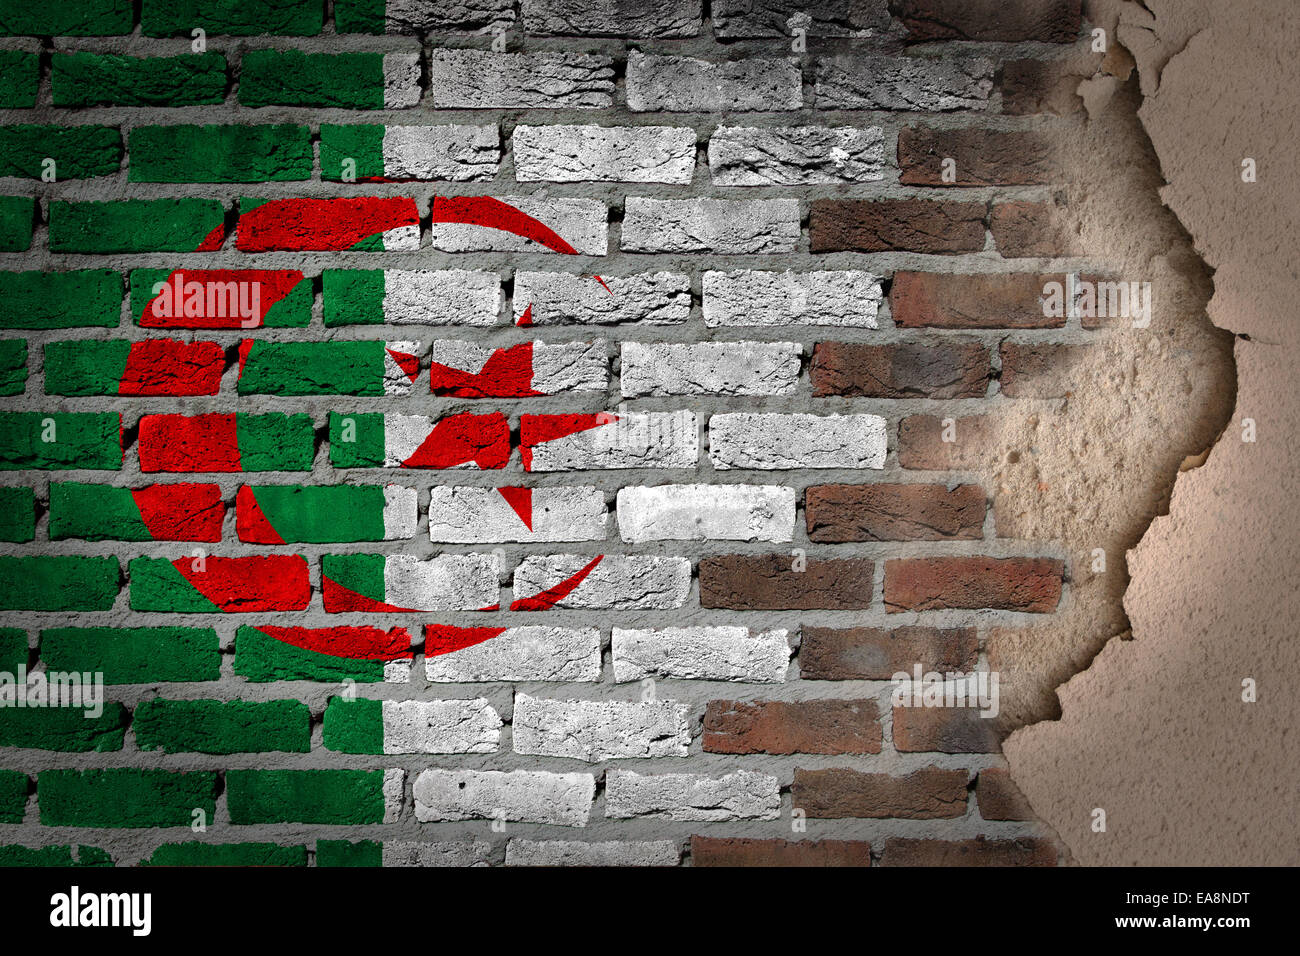 La texture du mur de brique sombre avec du plâtre - drapeau peint sur mur - Algérie Banque D'Images